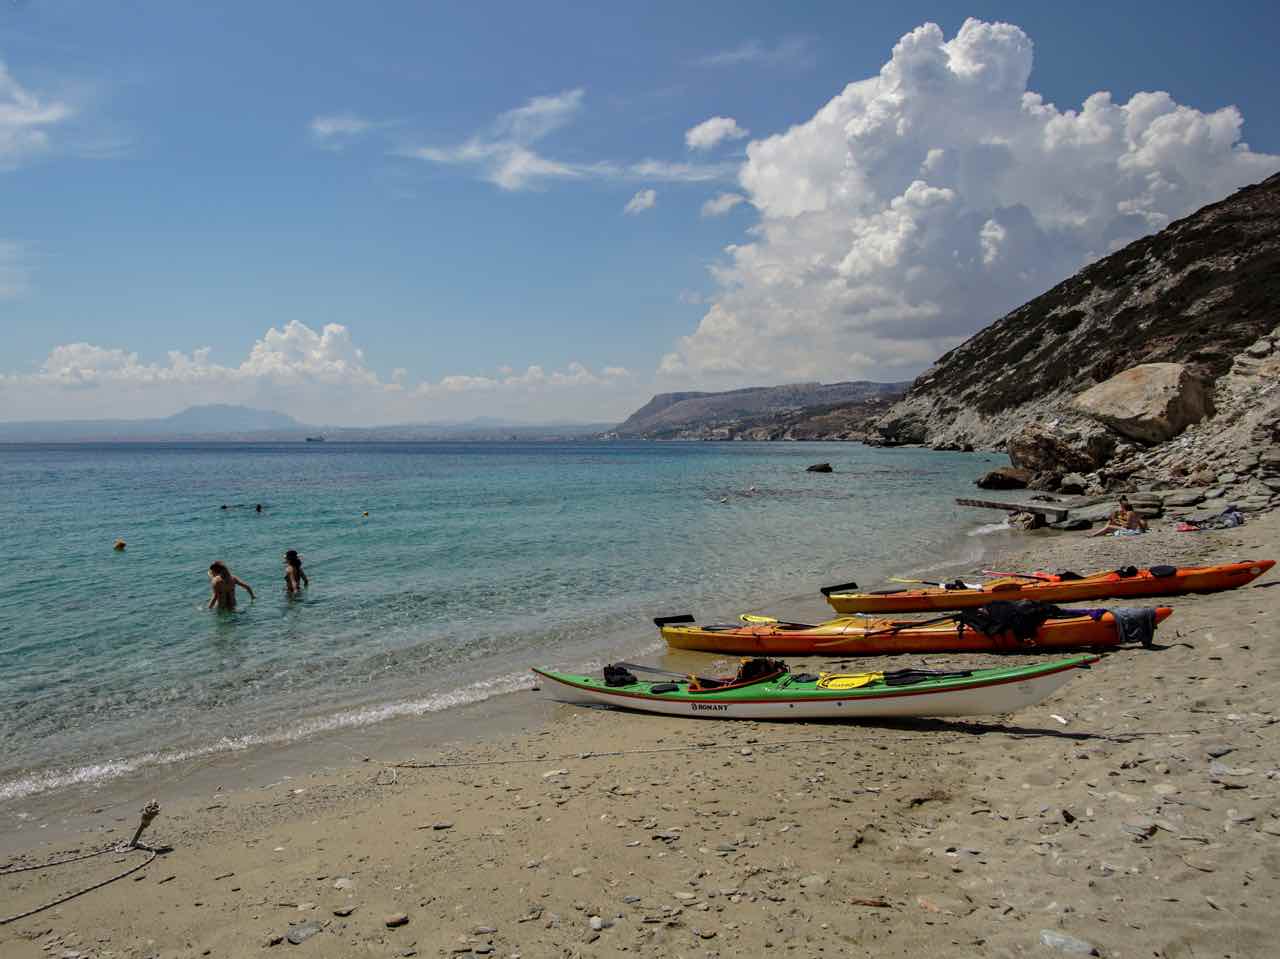 sea kayak daily trip agia pelagia lygaria, sea kayak trips crete, sea kayak best trips heraklion crete, activities heraklion crete, best activities iraklion crete